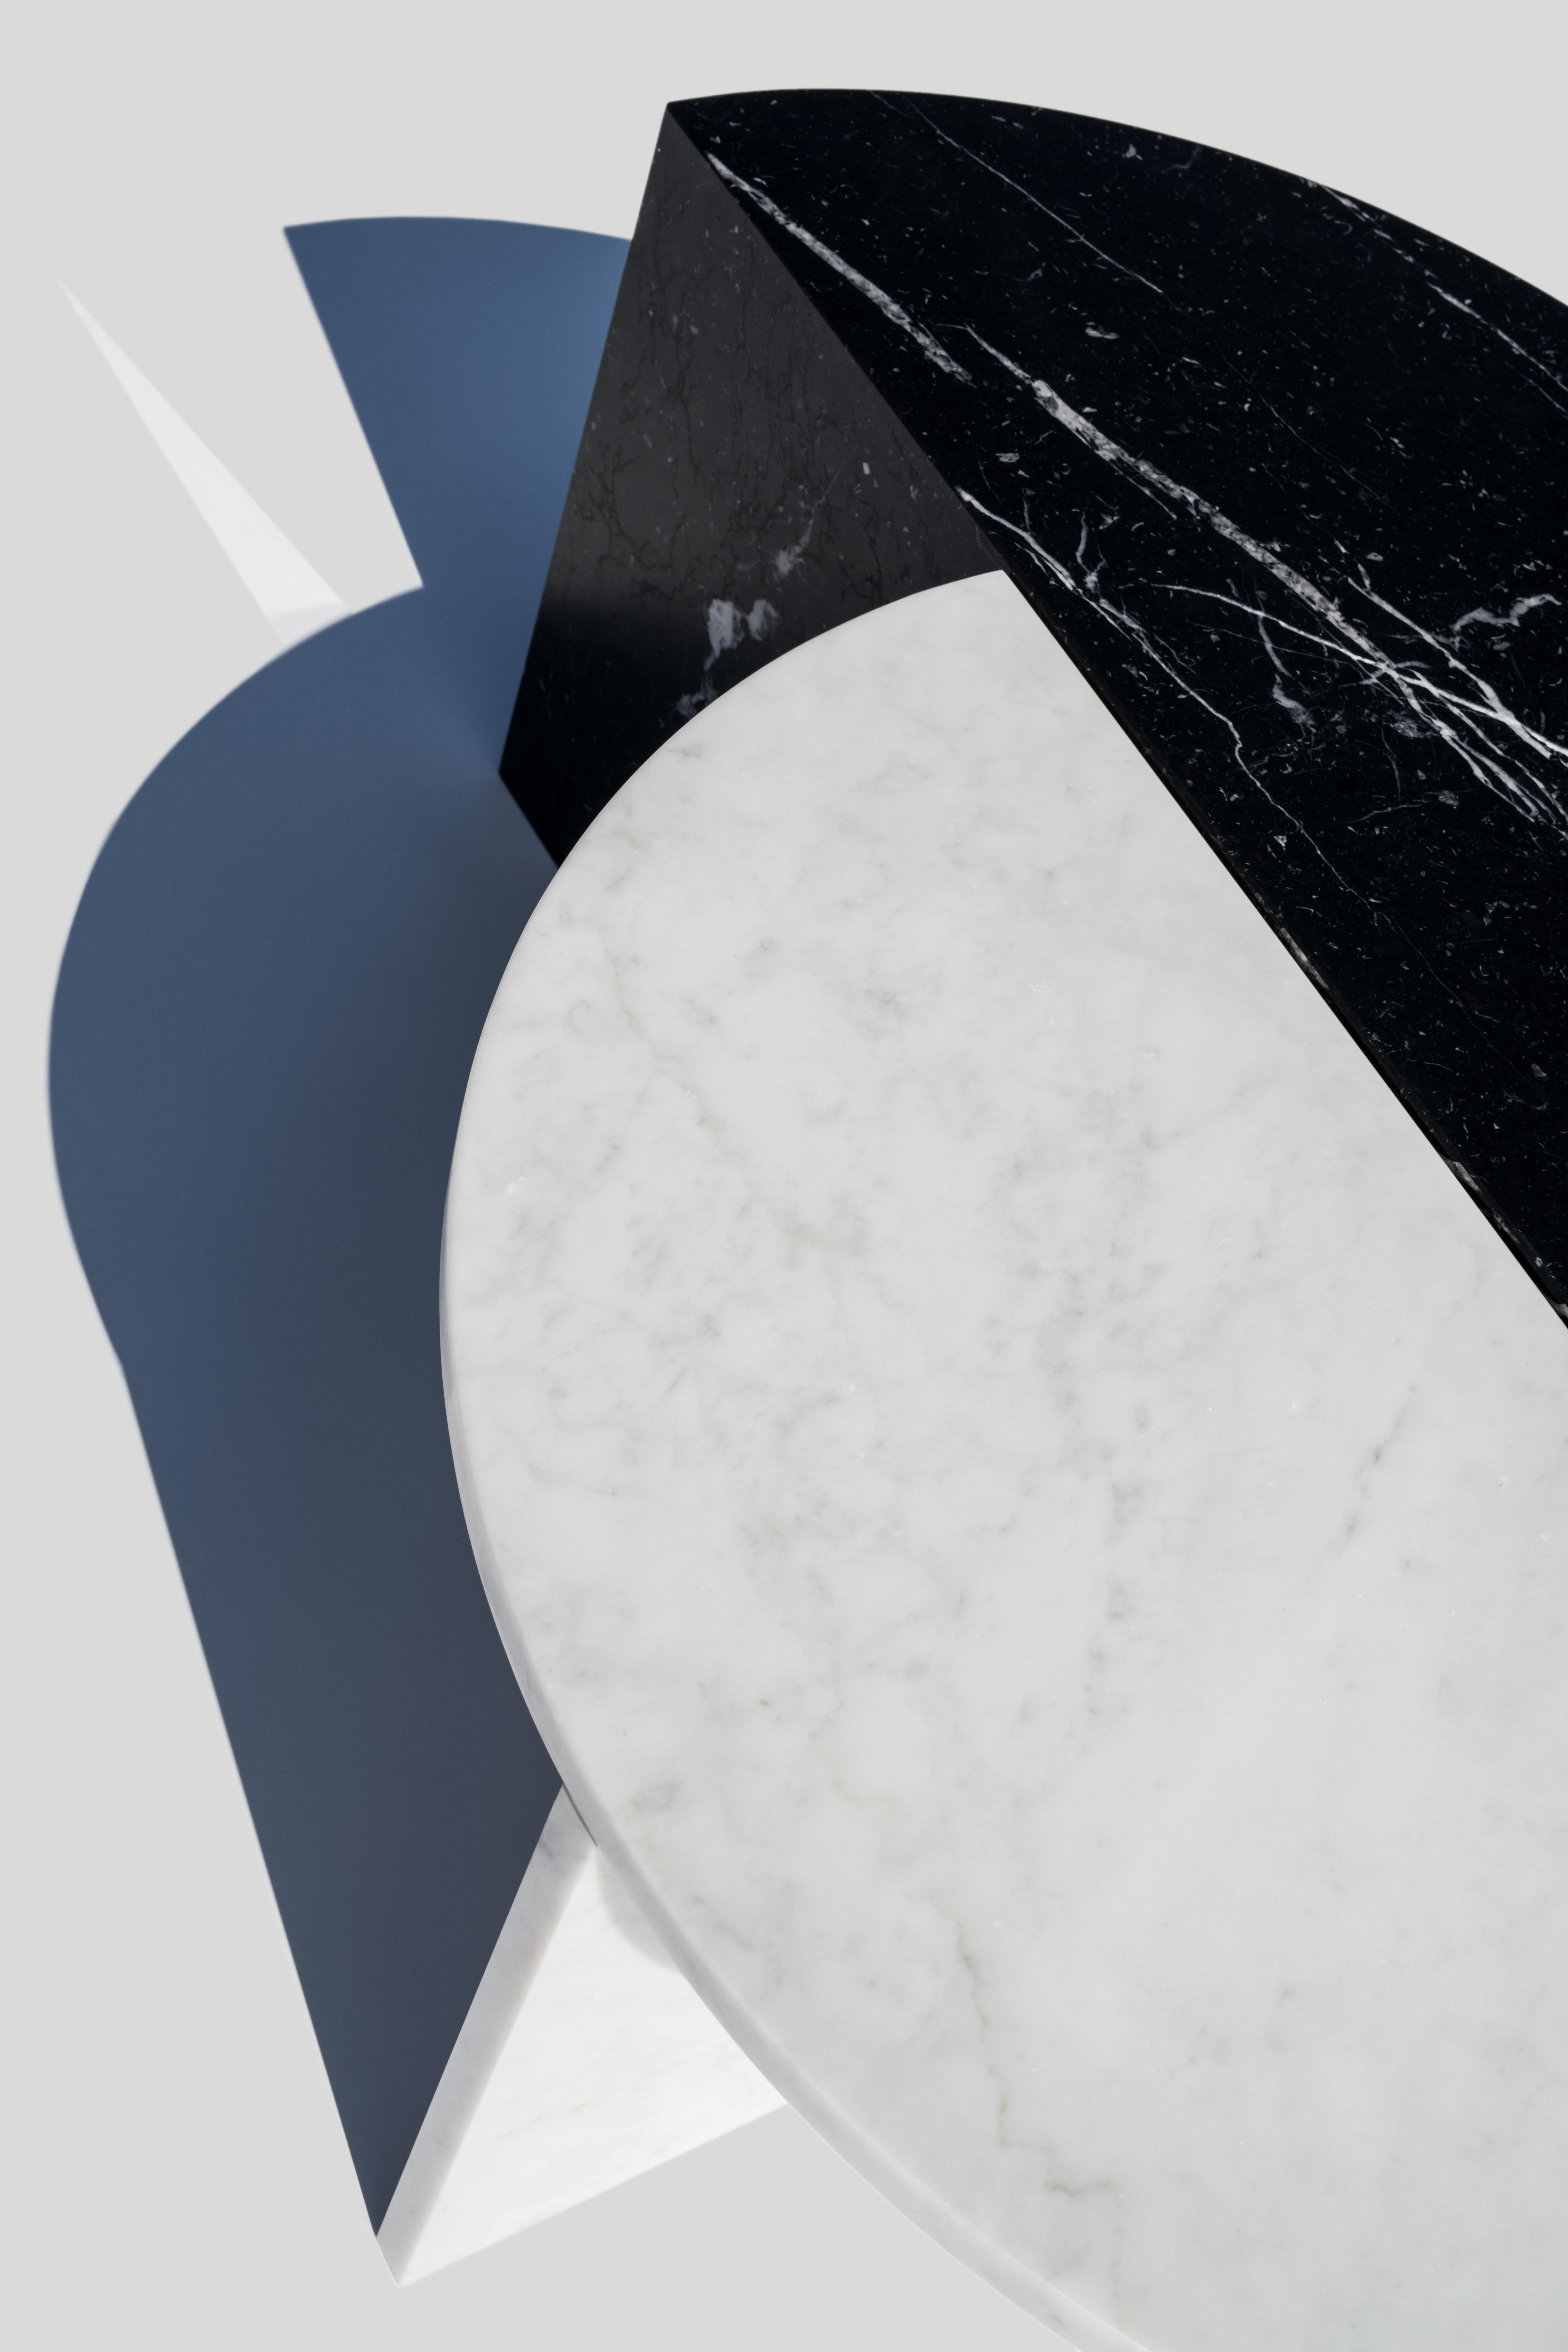 MATERIAL : Marbre ;
Marbre : Nero Marquina (noir) ; Carrara (blanc)
Dimensions : 70 x 35 x 35
Concepteur : Sebastian Scherer

Ces tables basses peuvent être combinées de diverses manières, créant ainsi un mélange intéressant de formes et de